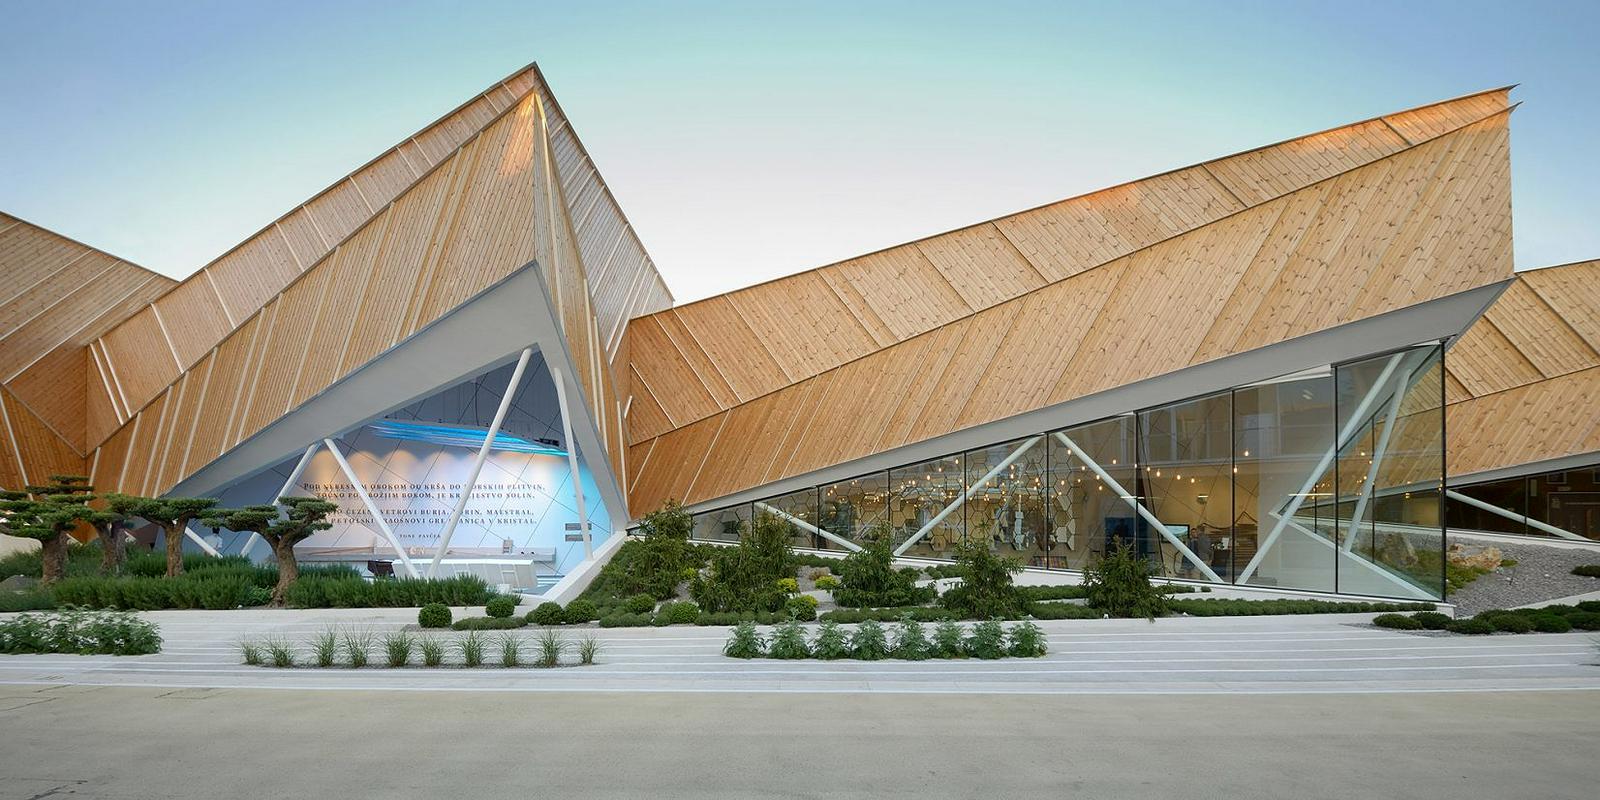 Pri arhitekturnem biroju SoNo Arhitekti so pritegnili mojo pozornost s slovenskim paviljonom na svetovni razstavi Expo Milano 2015. Zahvaljujoč lesu in zelenju ima ta preprost, a sodoben dizajn slovenski podton. Foto: SoNo Arhitekti 